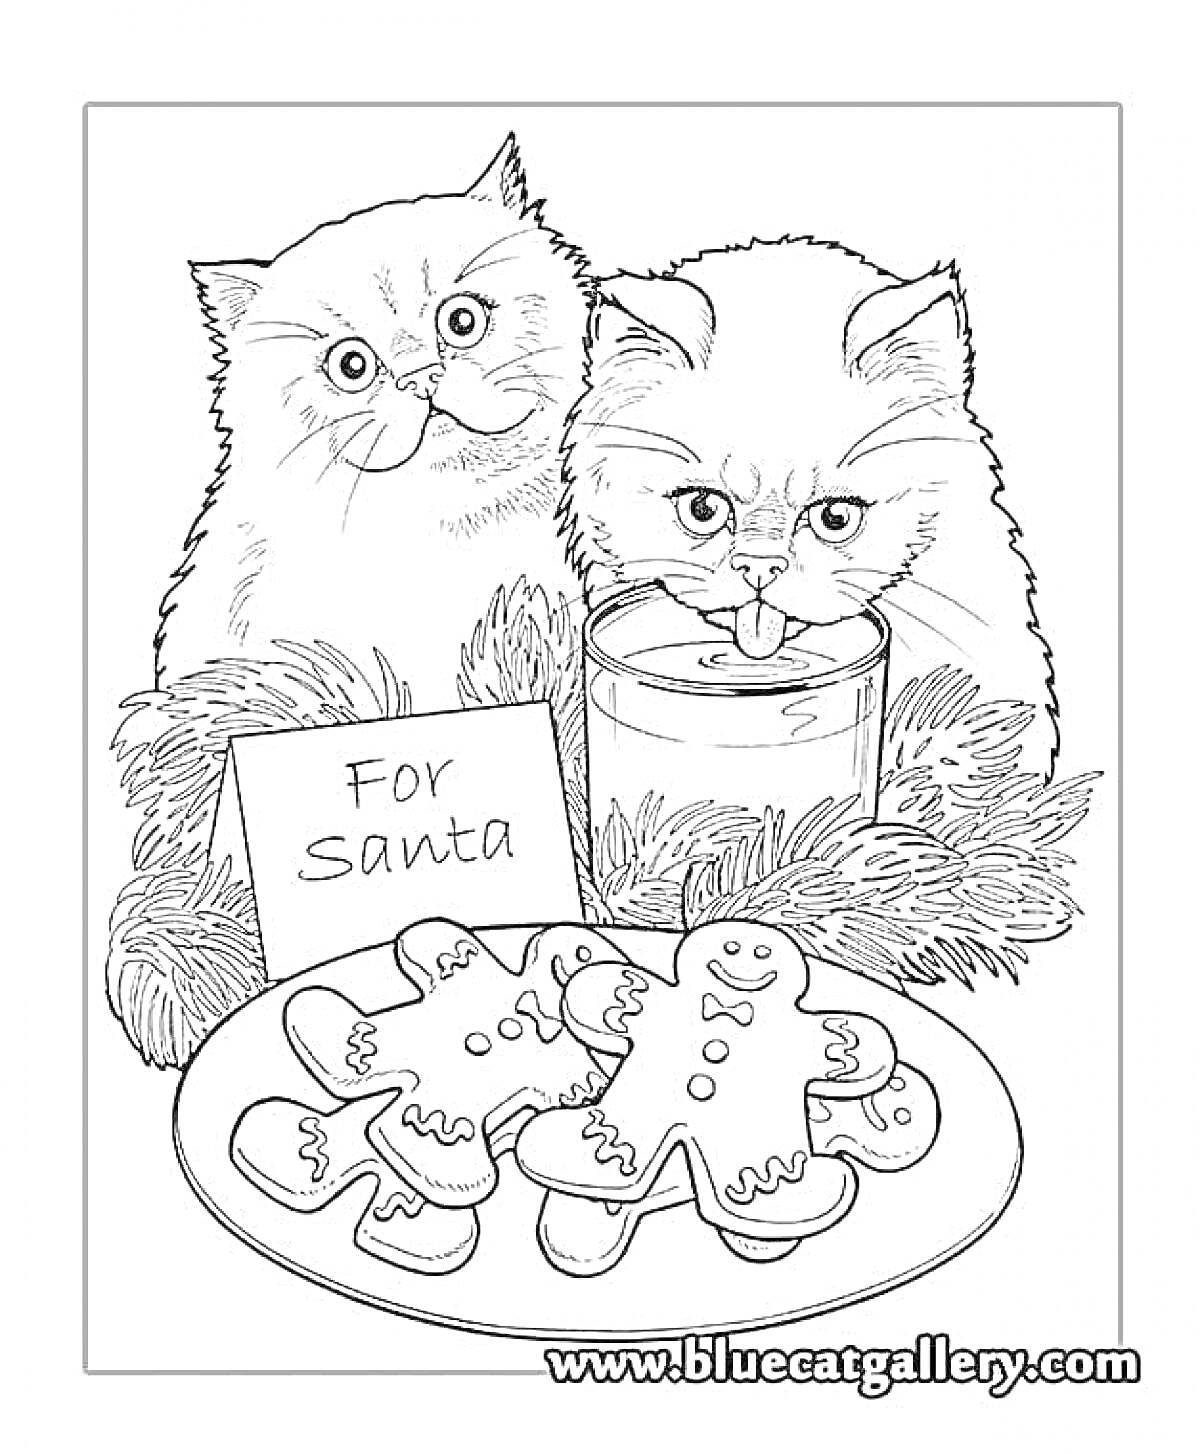 Два кота, еловые ветки, стакан молока, печенье в виде человечков, записка для Санты